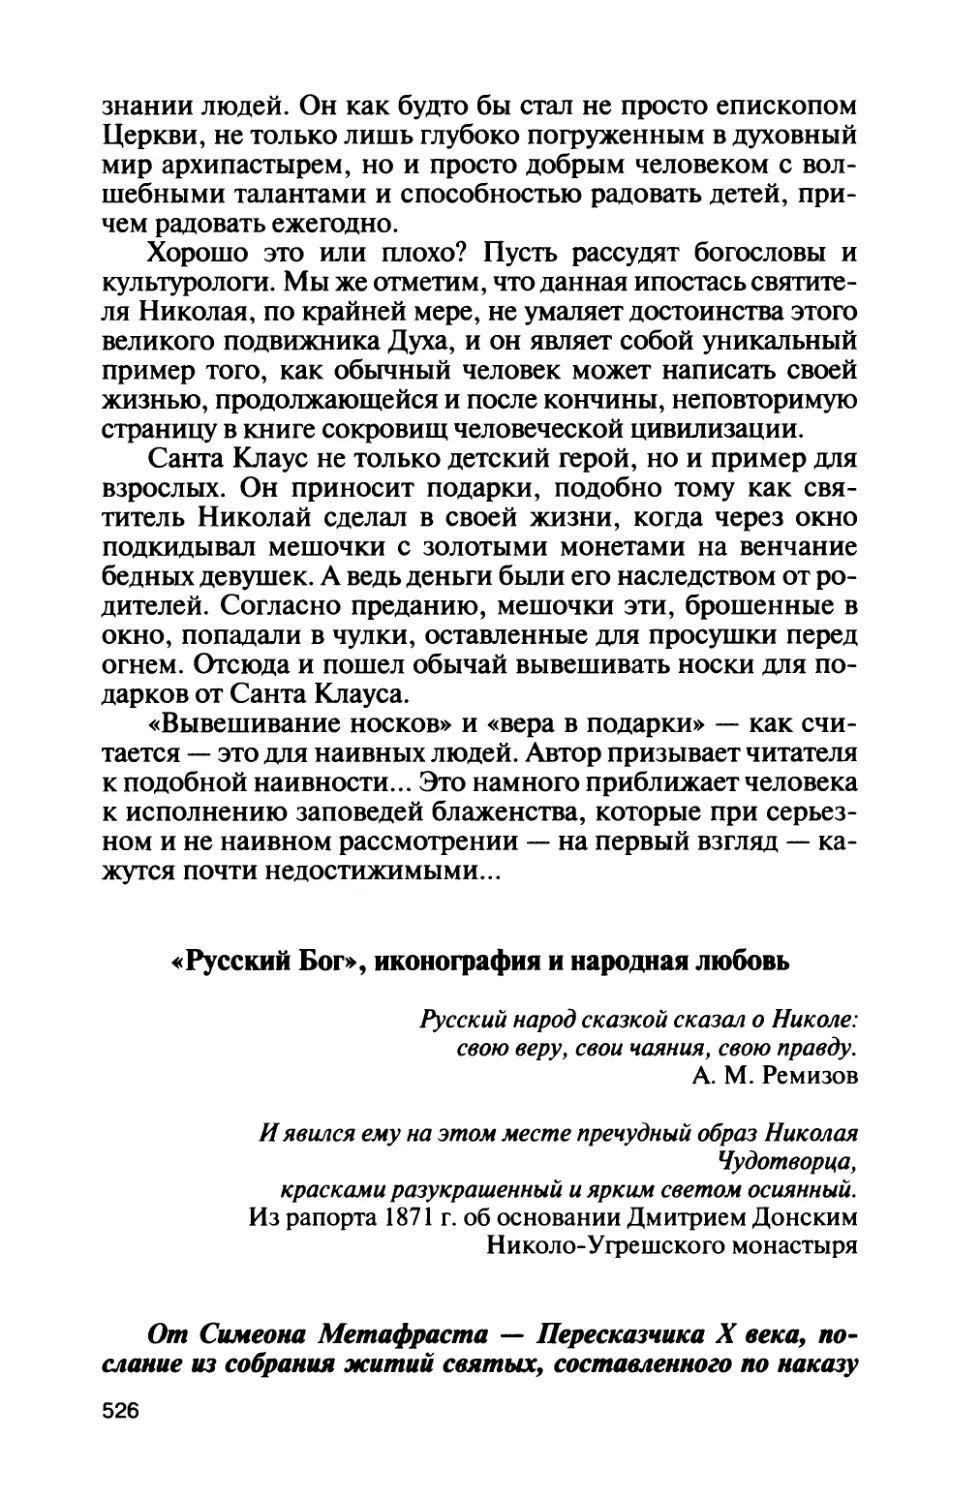 «Русский Бог», иконография и народная любовь